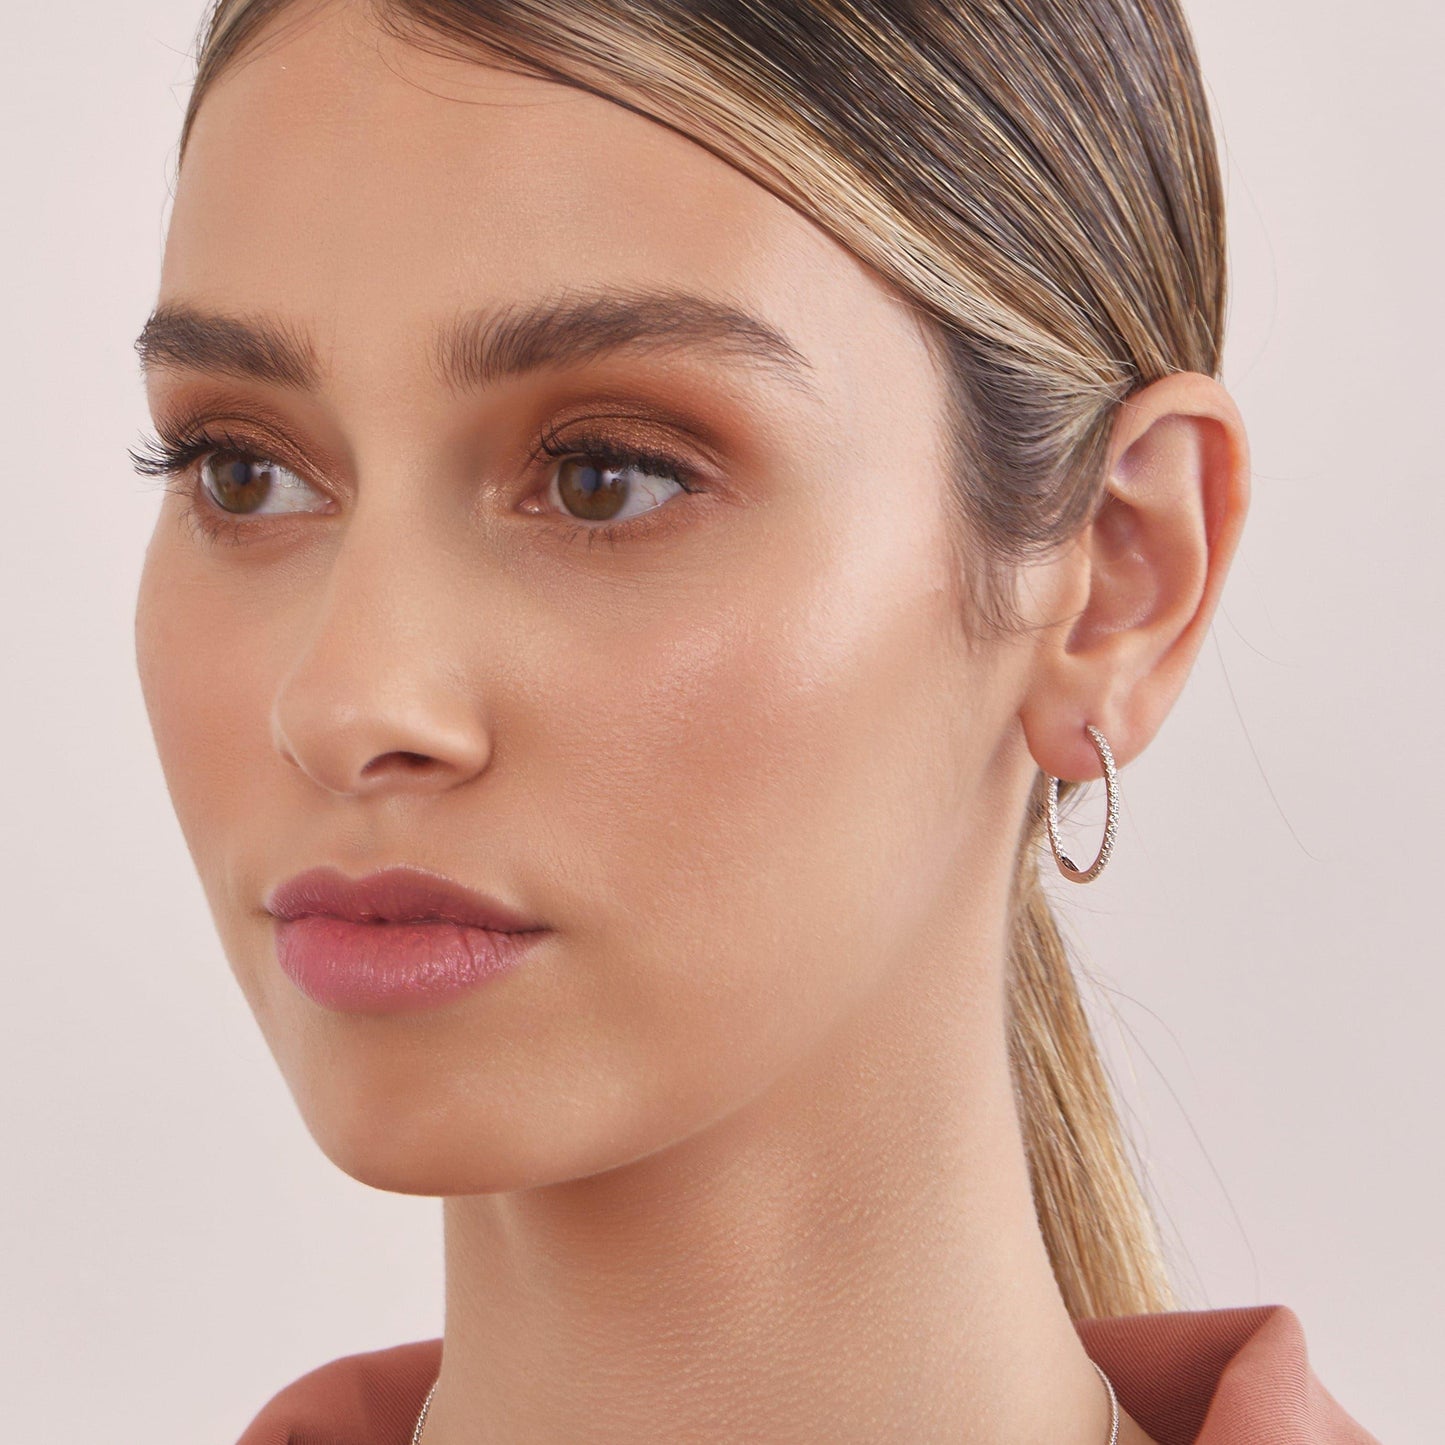 Medium Diamond Hoop Earrings